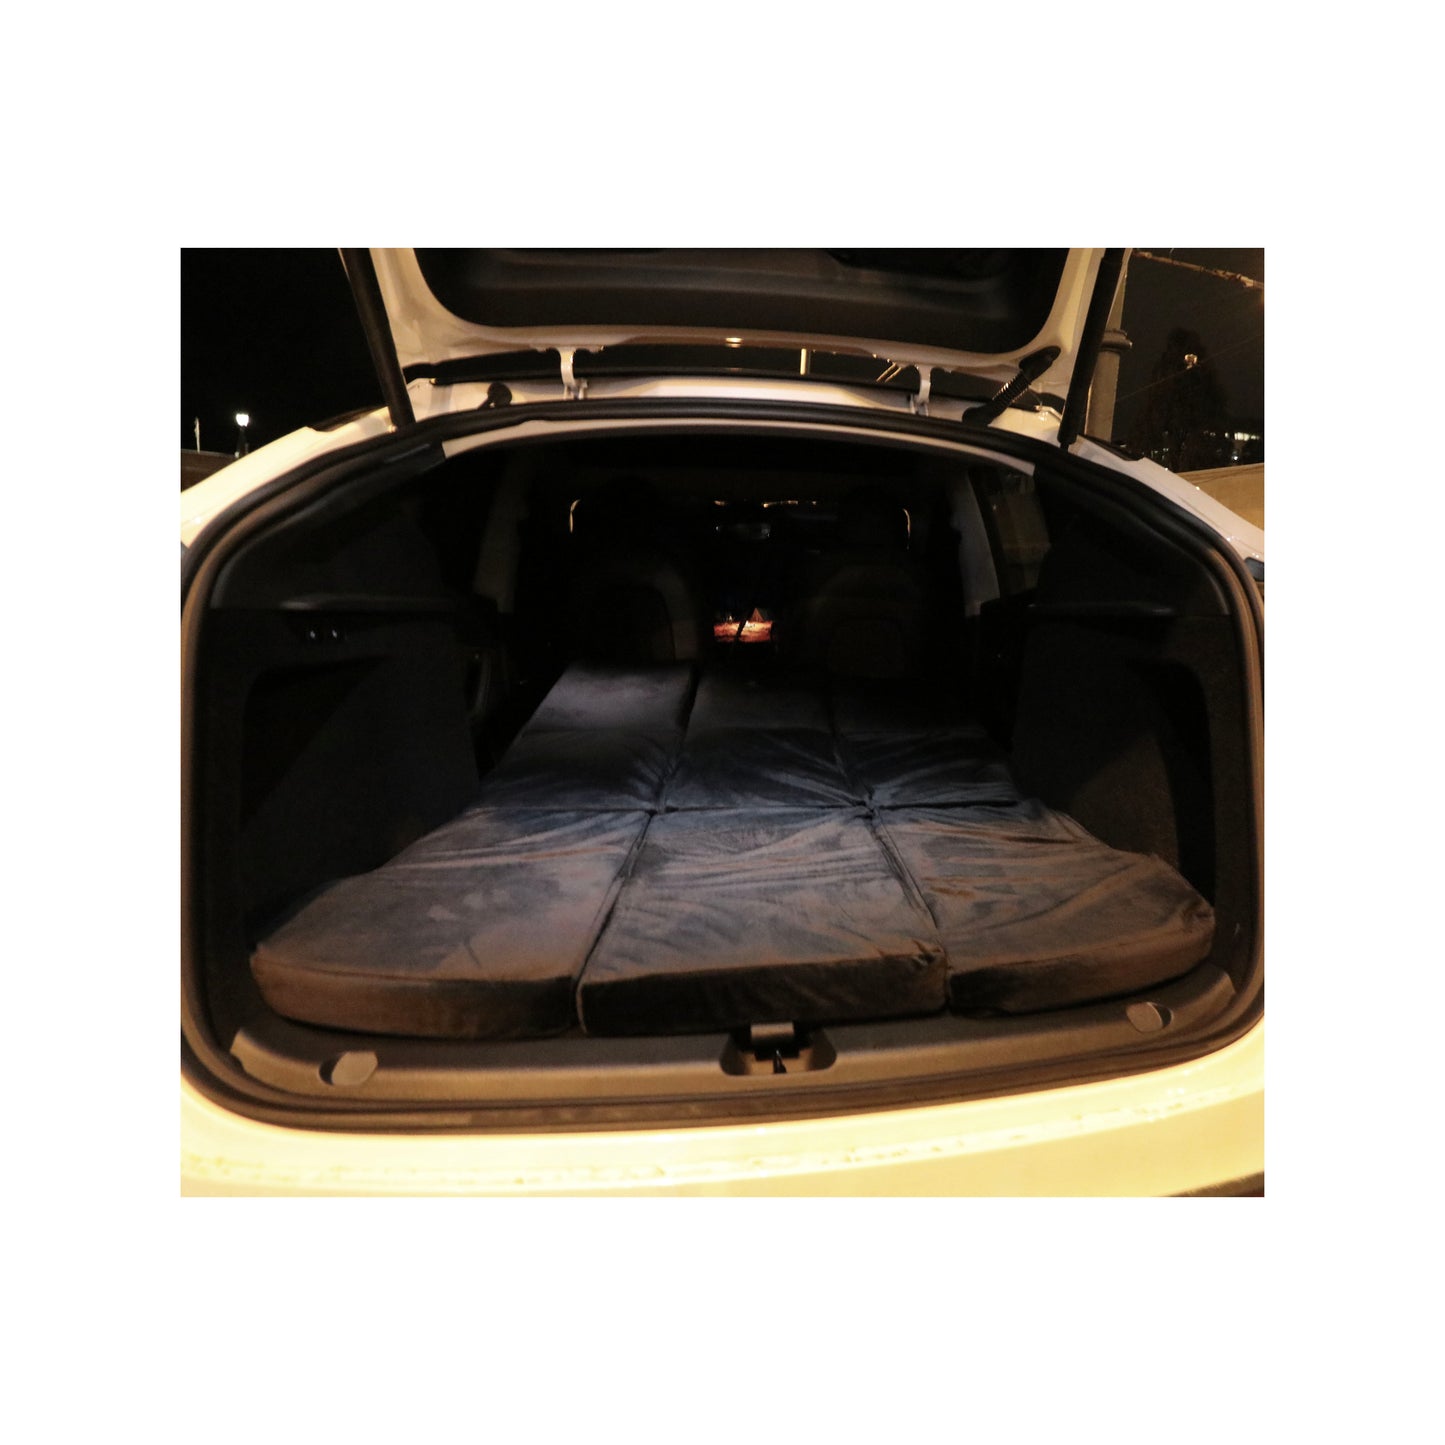 EV-MATS Deluxe CAMP SET for Tesla Model Y med Tesla-madrass med vanntett bag for bakre bagasjerom, satengark, dyne, 2 puter med trekk, 11 nyanser og 2 vanntette bager for foran bagasjerommet til Tesla Model Y